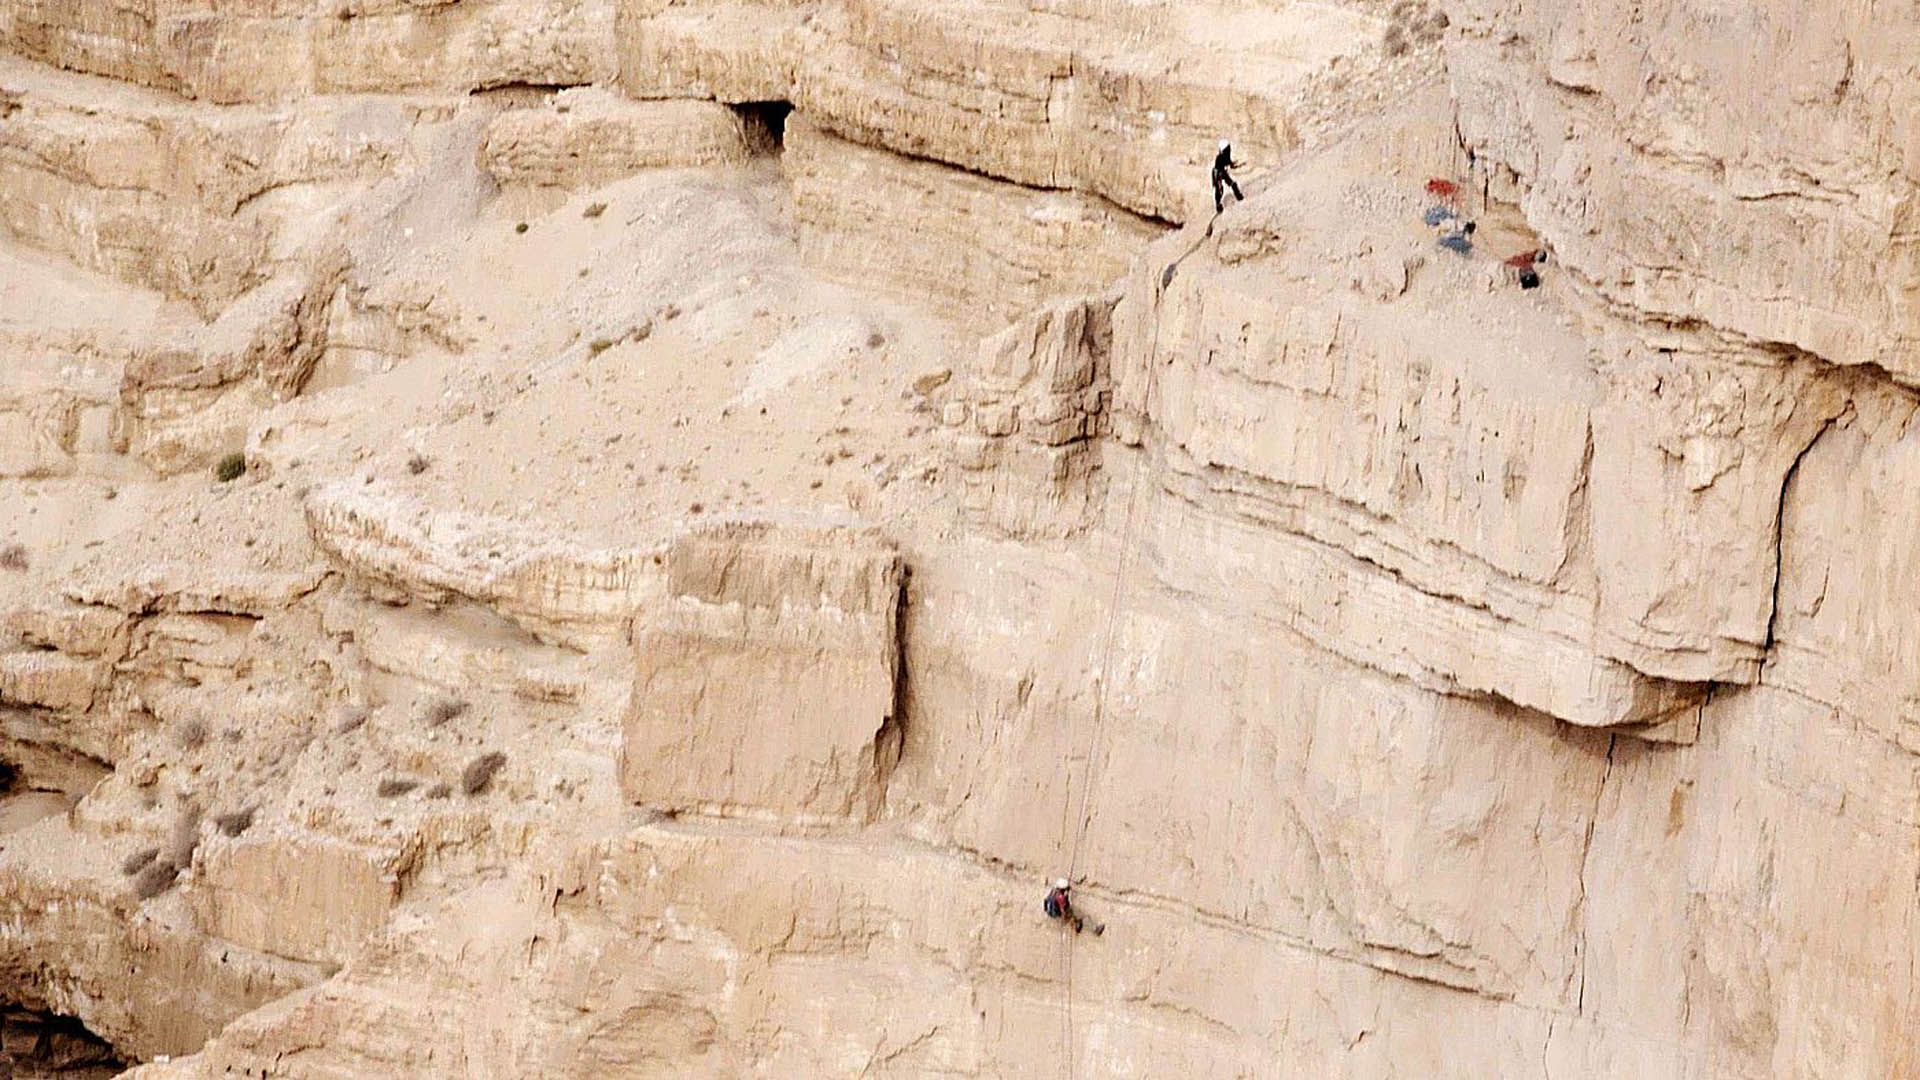 Archäologen verschaffen sich mit Seilen den Zugang zur Höhle des Schreckens